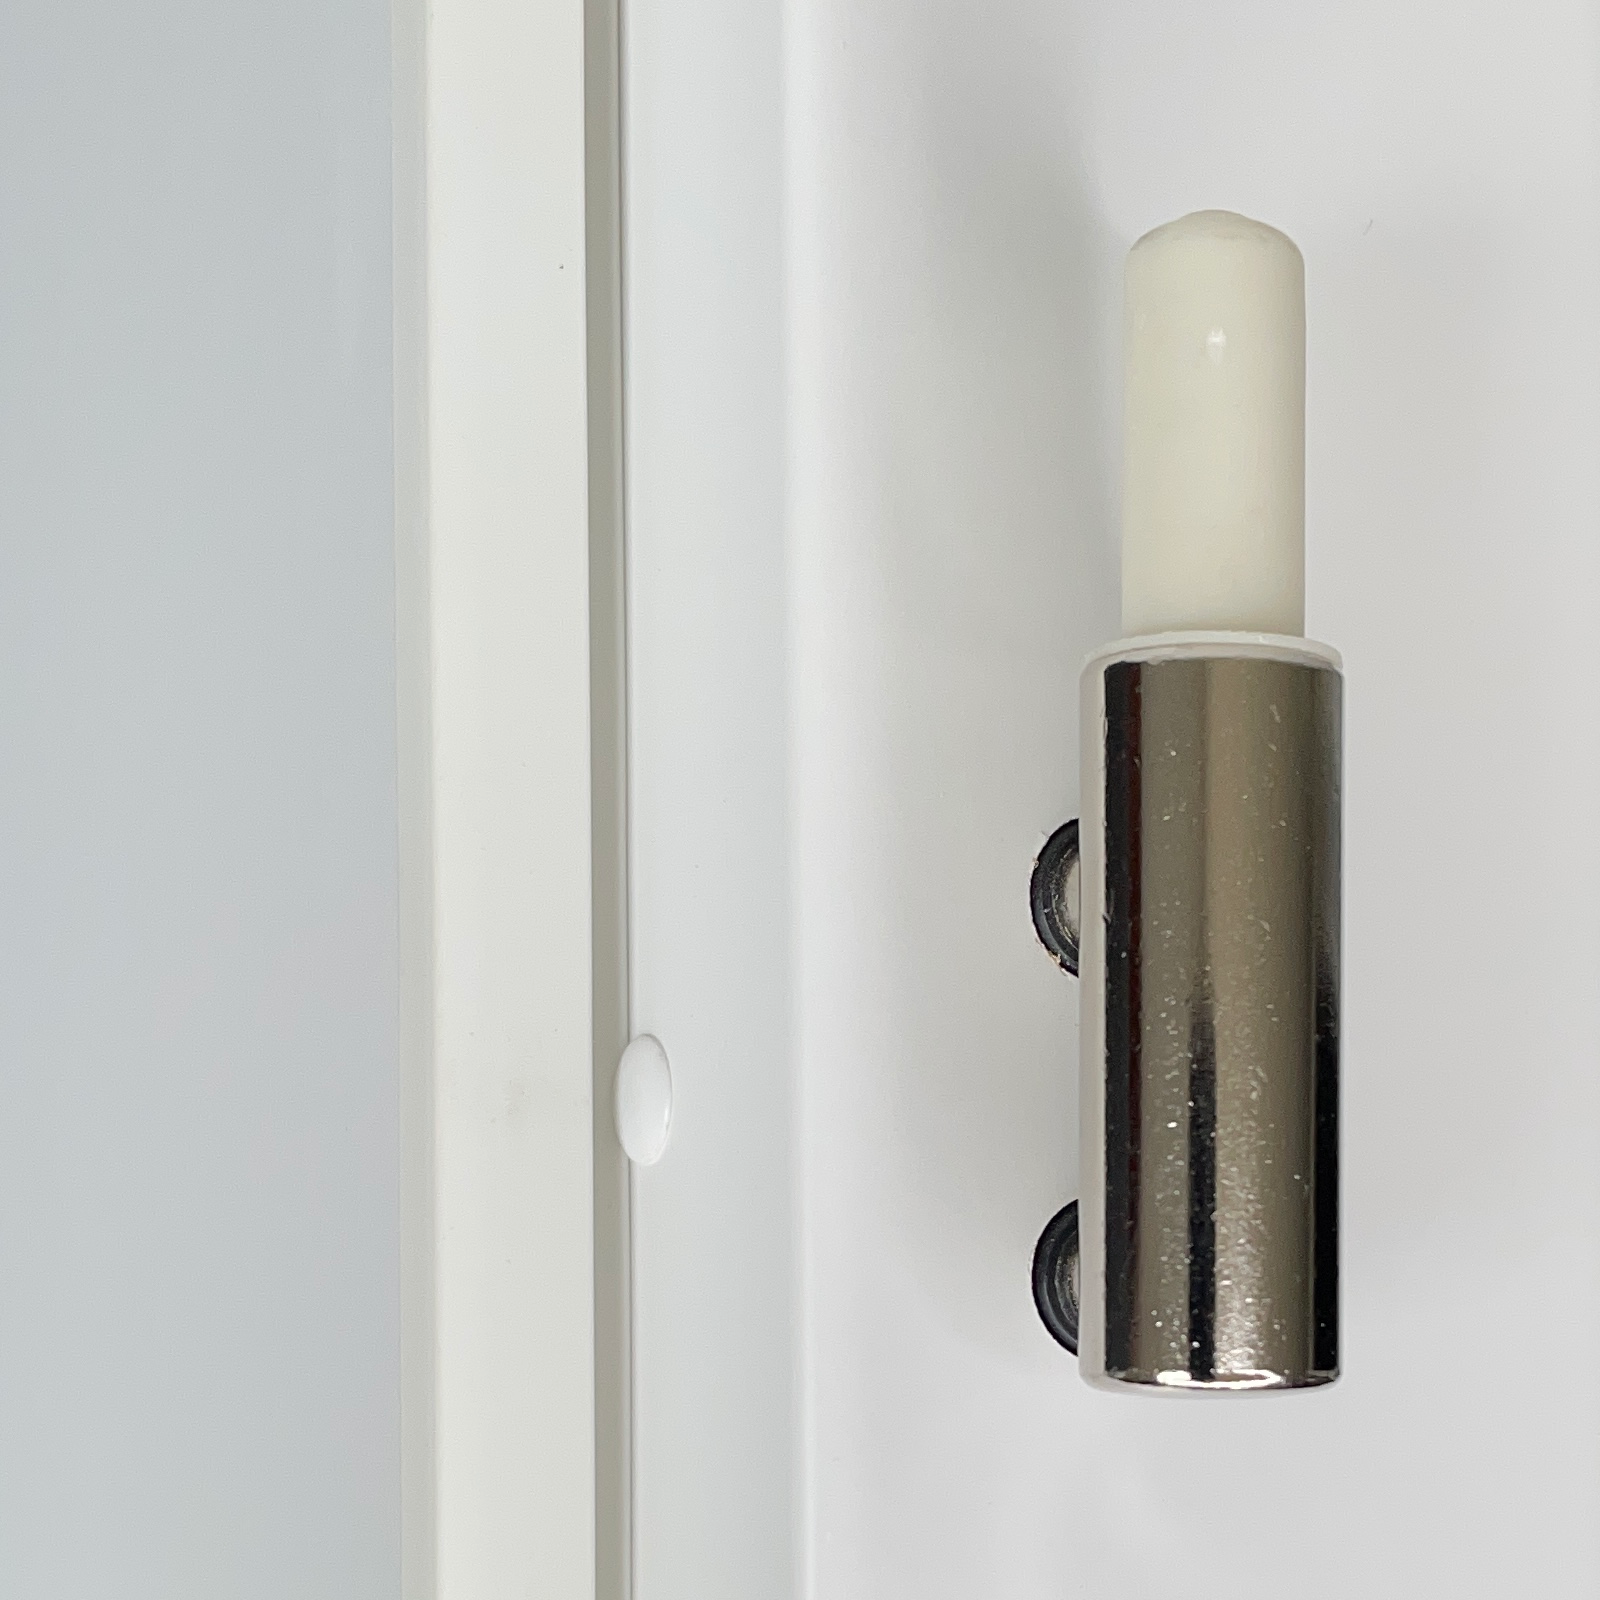 Zimmertür mit Zarge brillant-weiß 3 Rillen aufrecht Schlossseite Designkante - Modell Designtür VS33